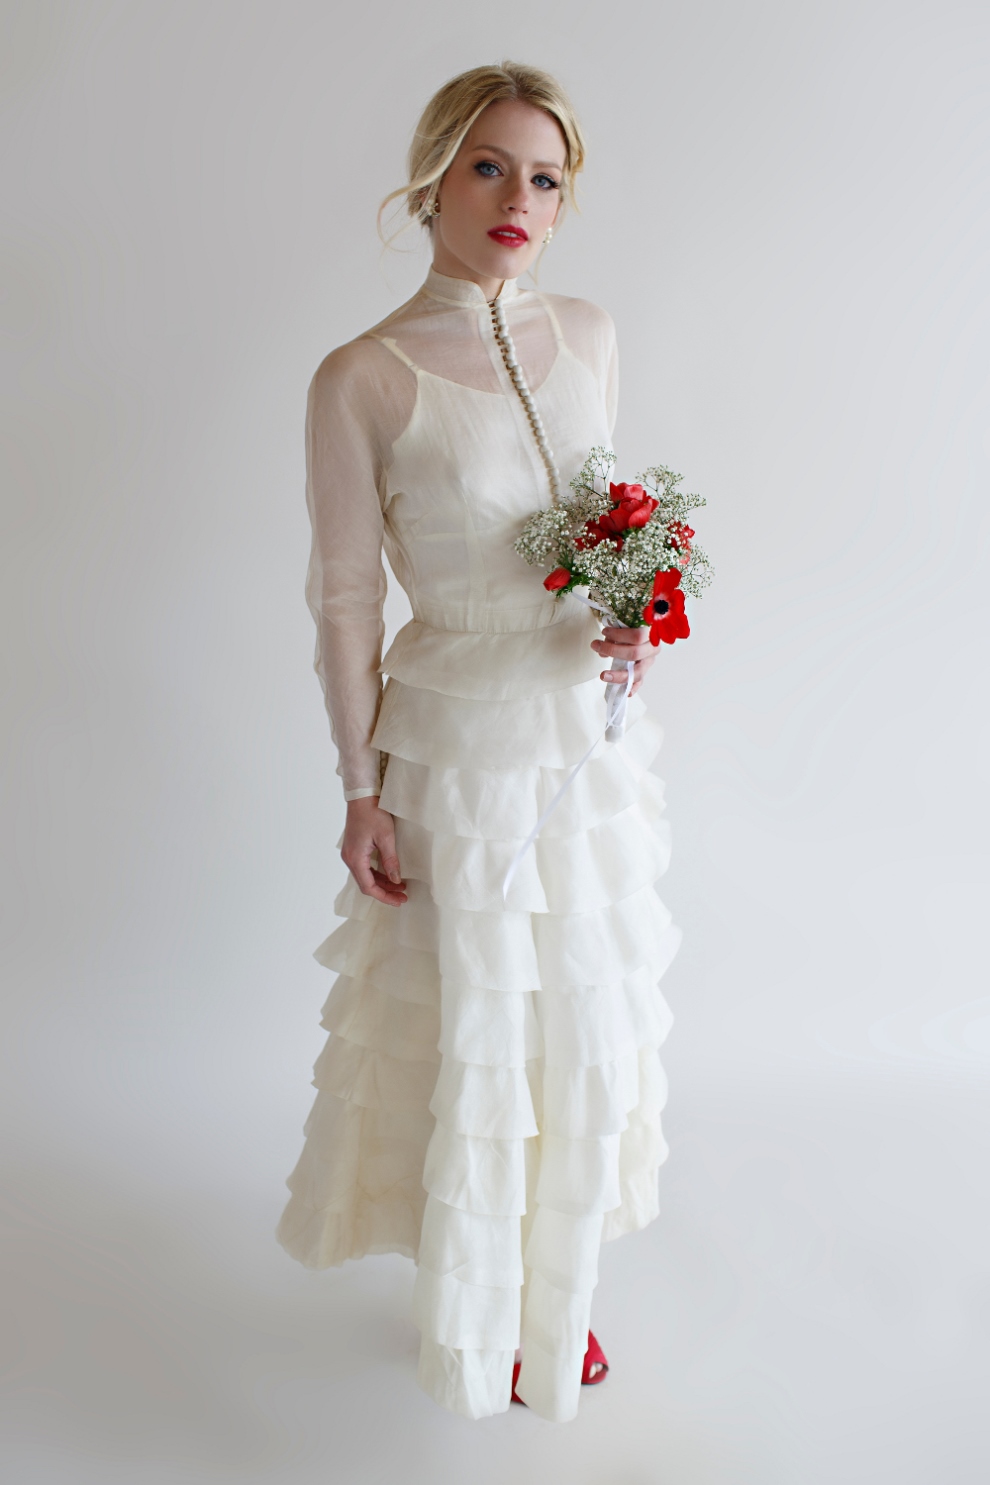 Beloved Vintage Bridal - The Lillie Gown